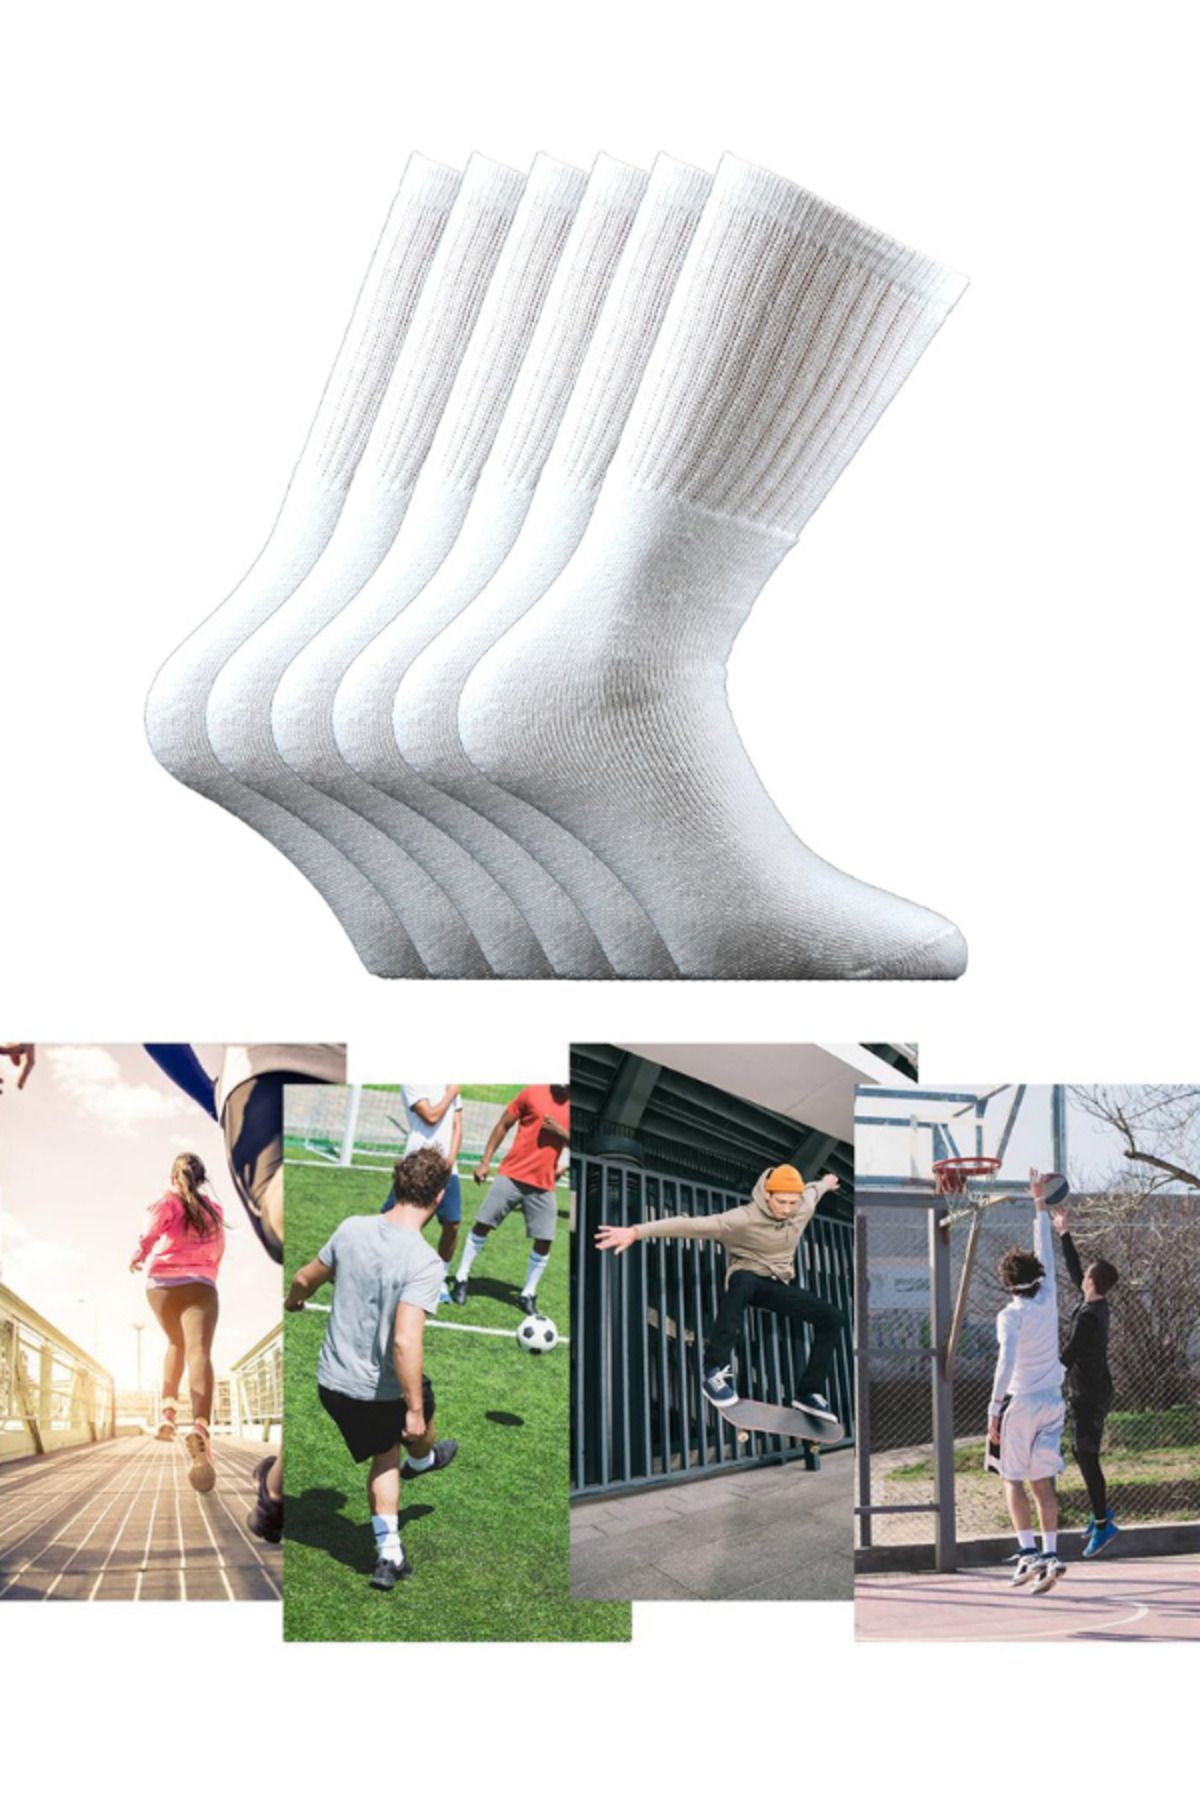 Socks Sirius 6 Çift Unisex Penye Ithal Antrenman Futbol Basketbol Koşu Yürüyüş Tenis Spor Çorap Seti